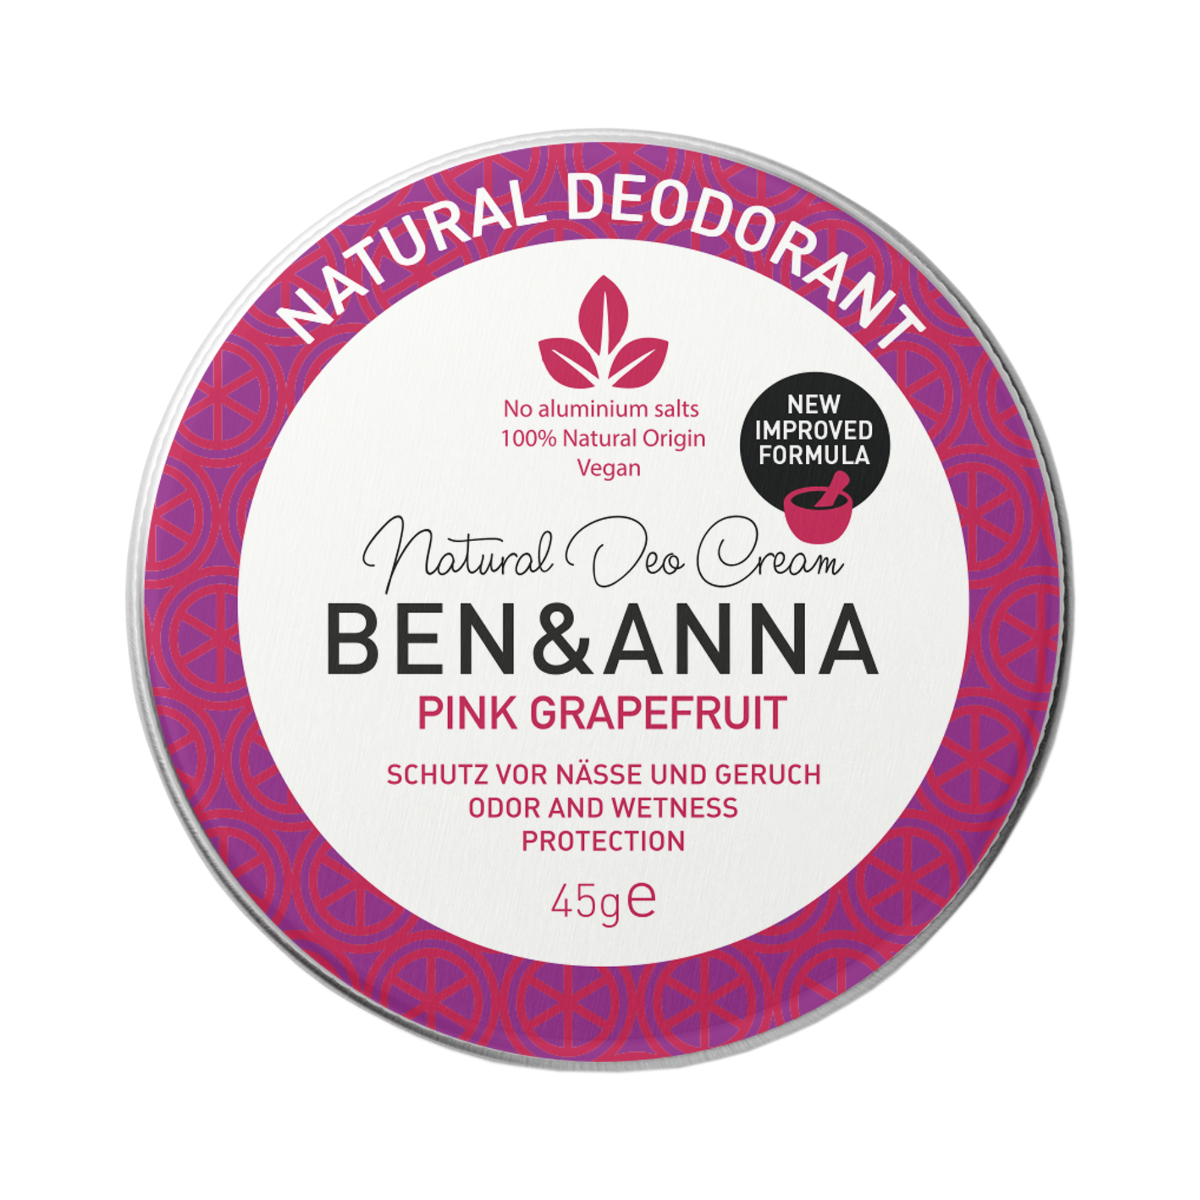 Deodorant natural crema Pink Grapefruit, 45g, Ben&Anna